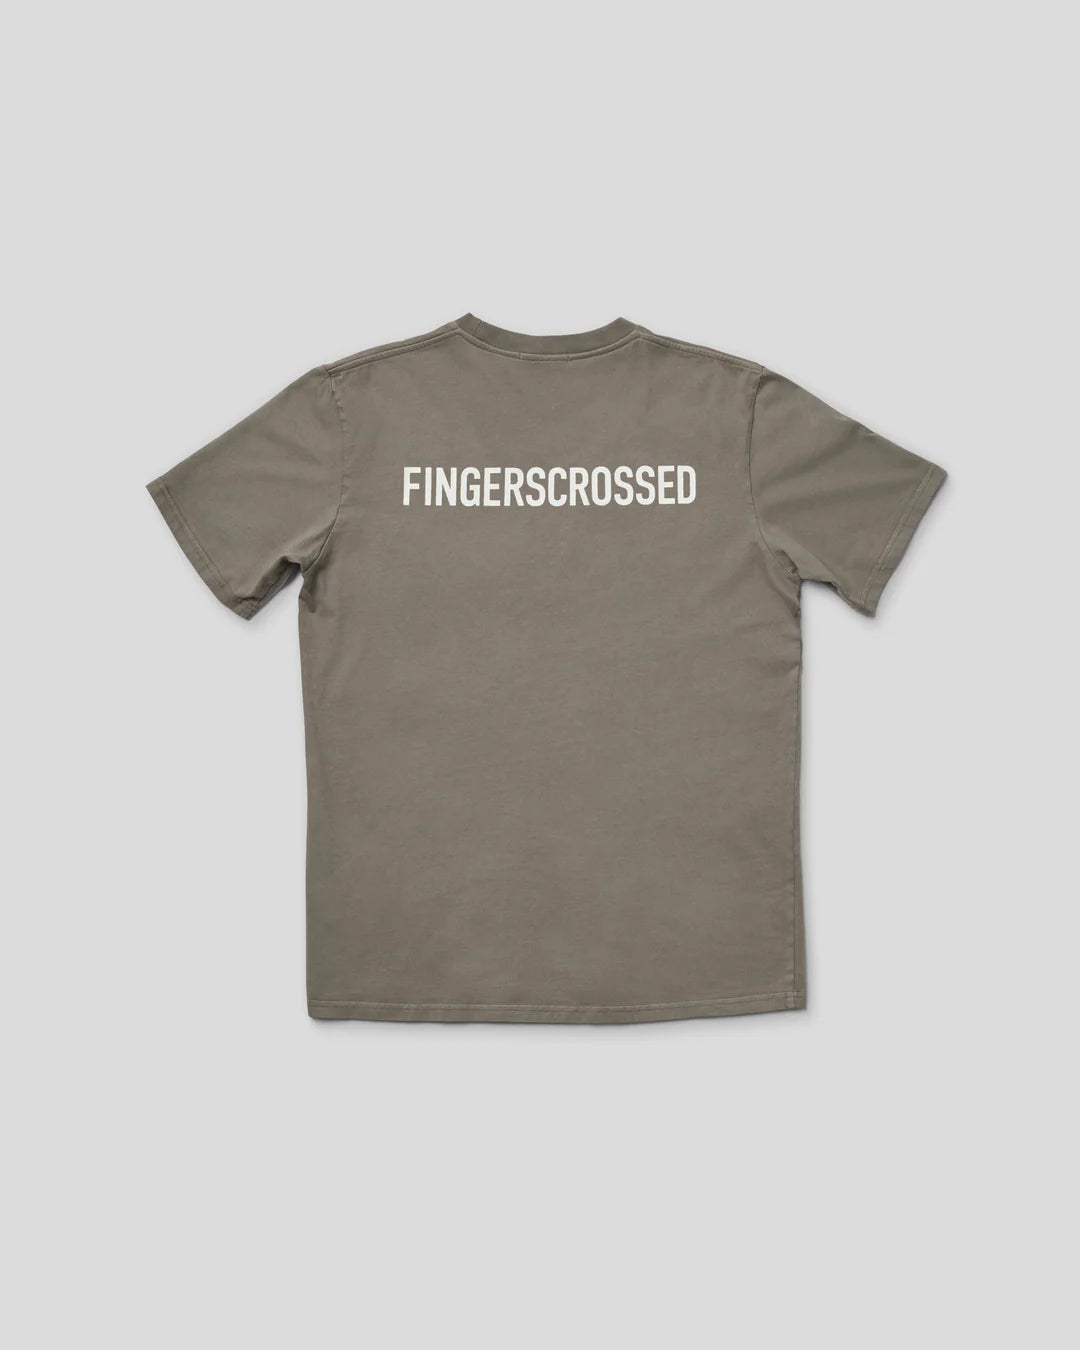 Fingercrossed #Tee Movement オリブ | プレミアムズ Tシャツ | 倫理的なラグジュアリーと快適さ